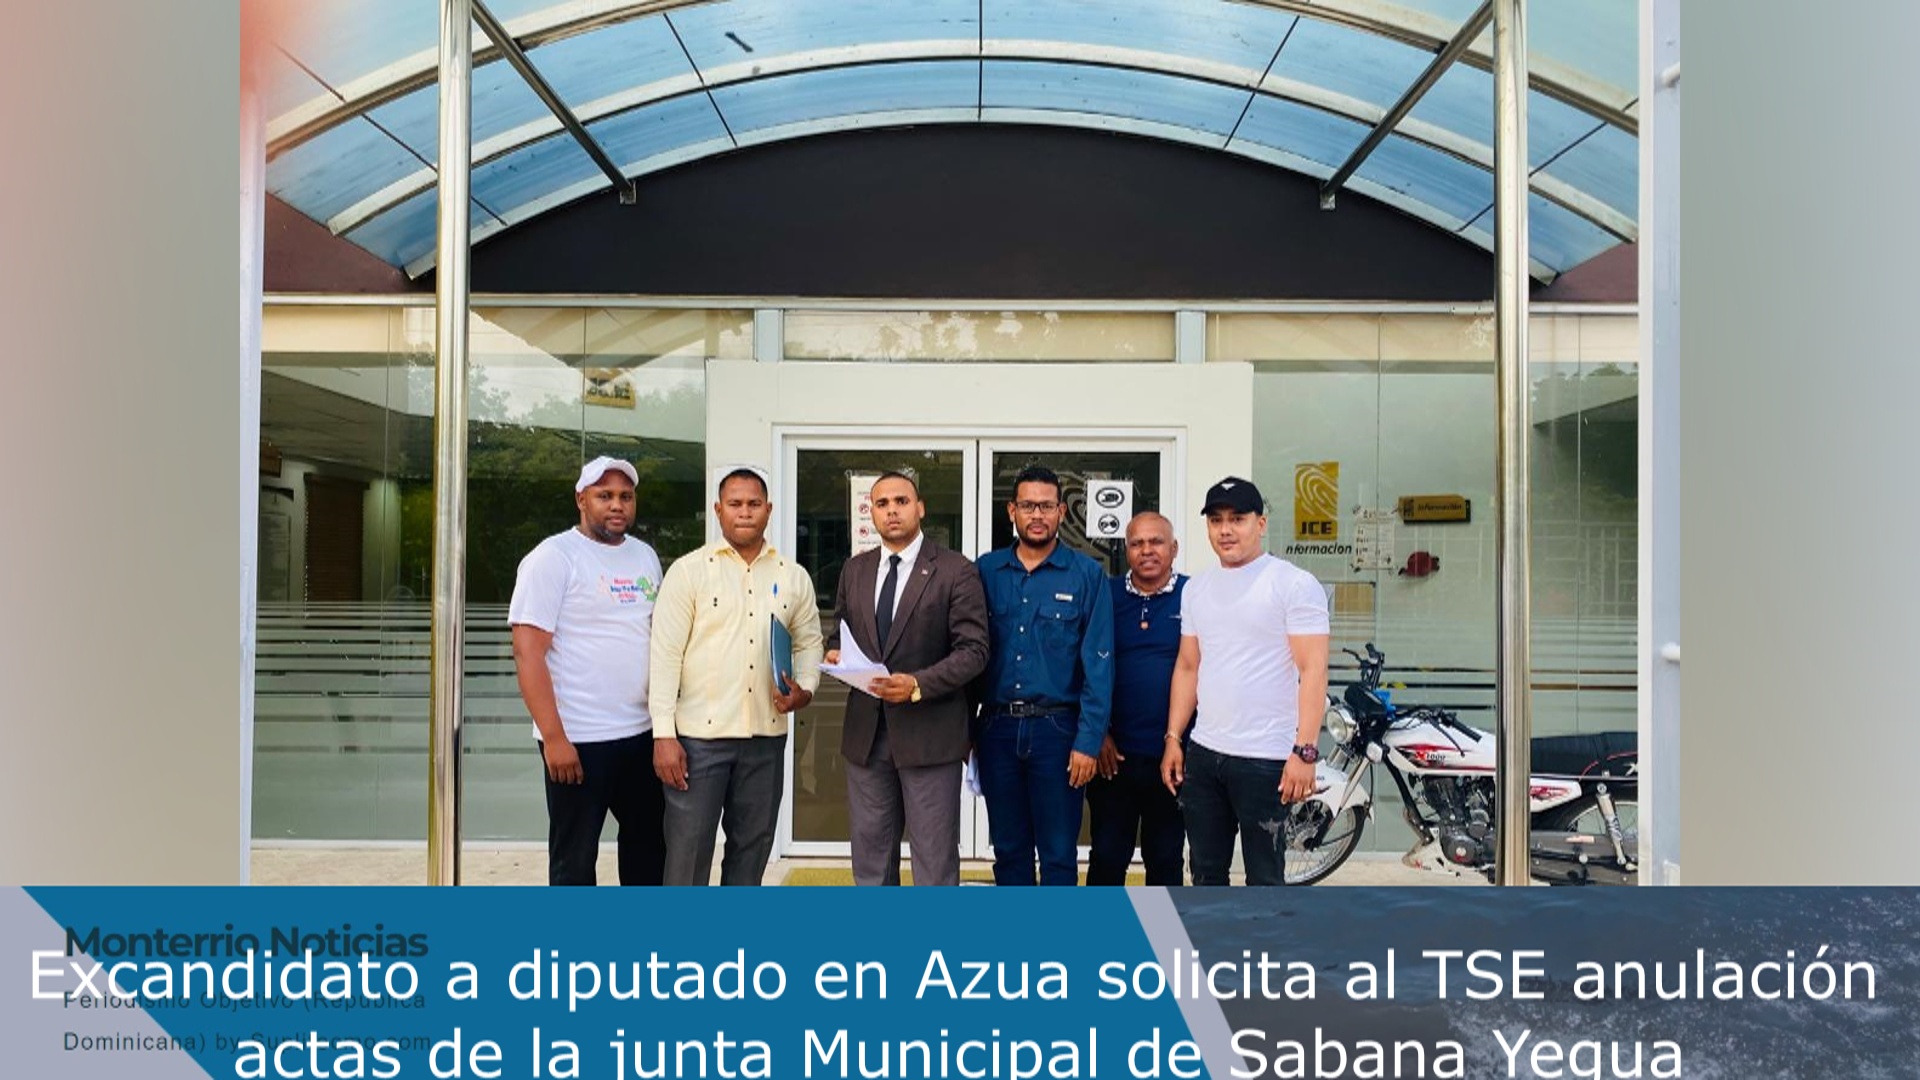 VIDEO: Excandidato a diputado en Azua solicita al TSE anulación actas de la junta Municipal de Sabana Yegua